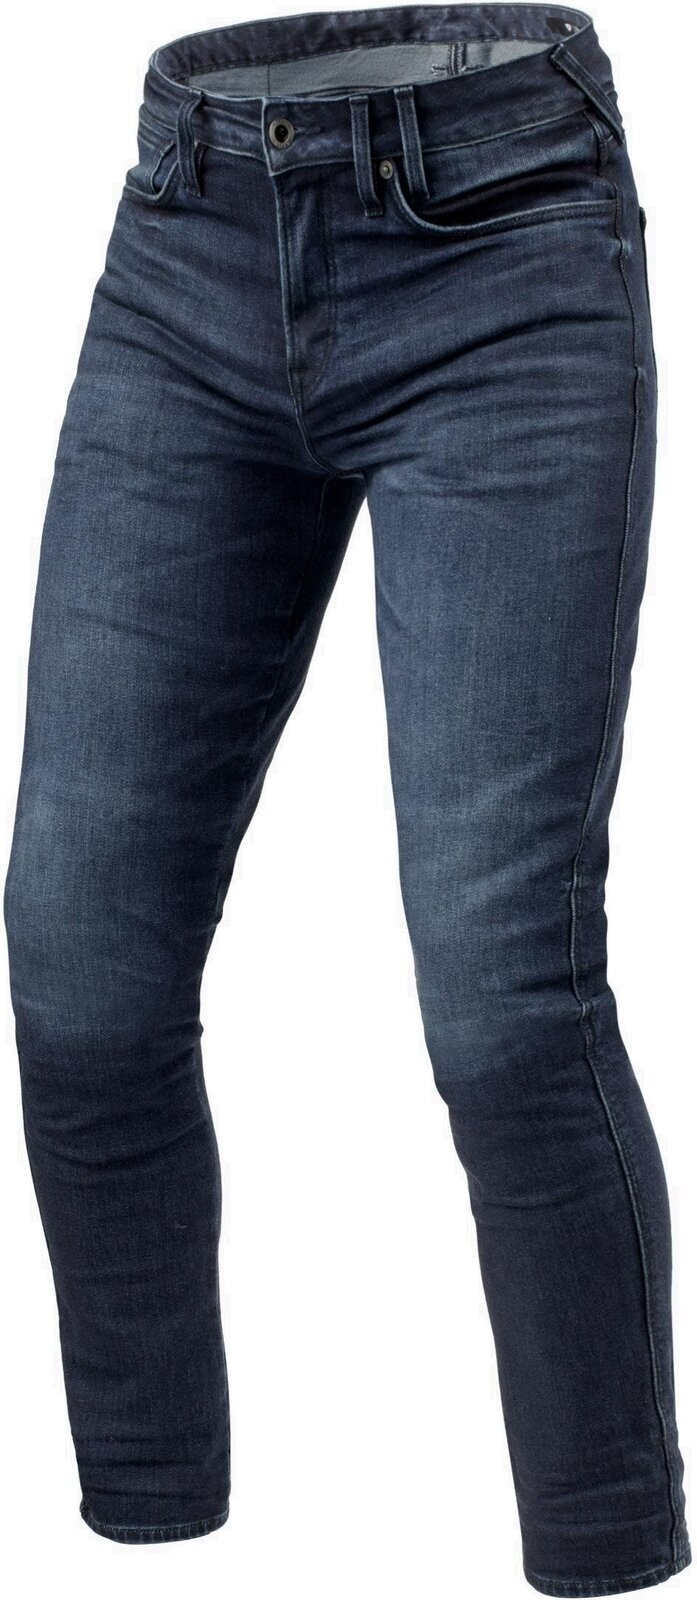 Motoristične jeans hlače Rev'it! Jeans Carlin SK Dark Blue 34/33 Motoristične jeans hlače